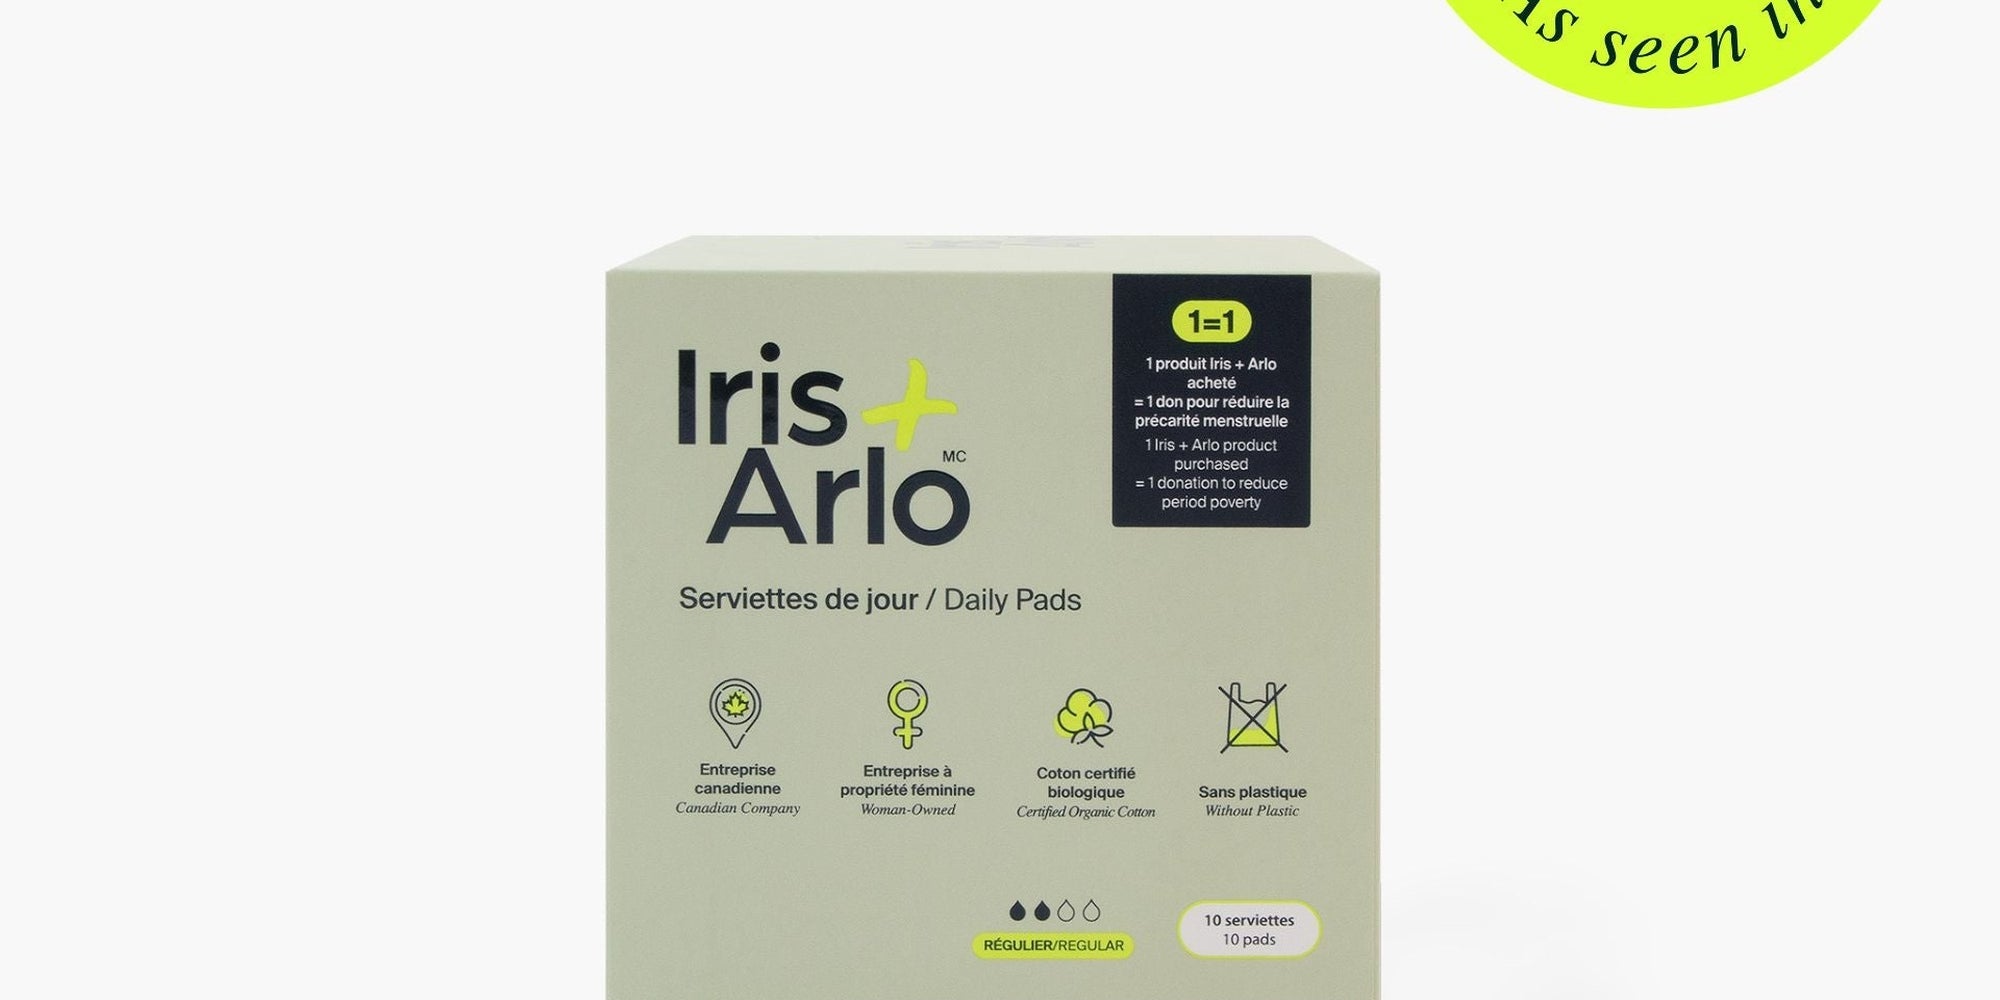 Serviettes de jour - Iris + Arlo